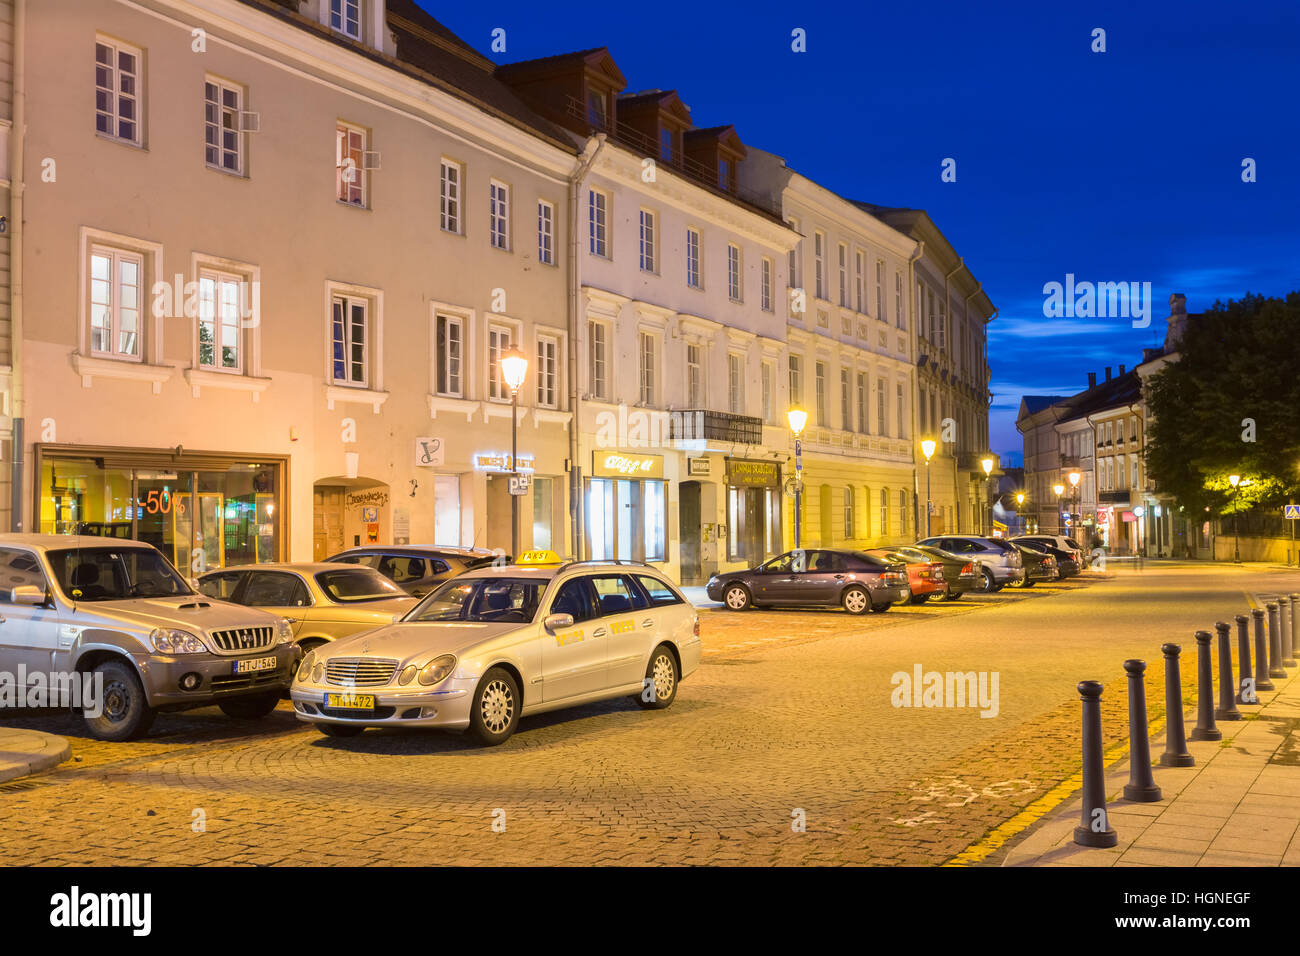 Vilnius, Litauen - 8. Juli 2016: Die bewegungslos silbernen Mercedes-Benz Taxi Auto unter parkenden Autos auf dem verlassenen Rotuses Platz In Abend Illumin Stockfoto